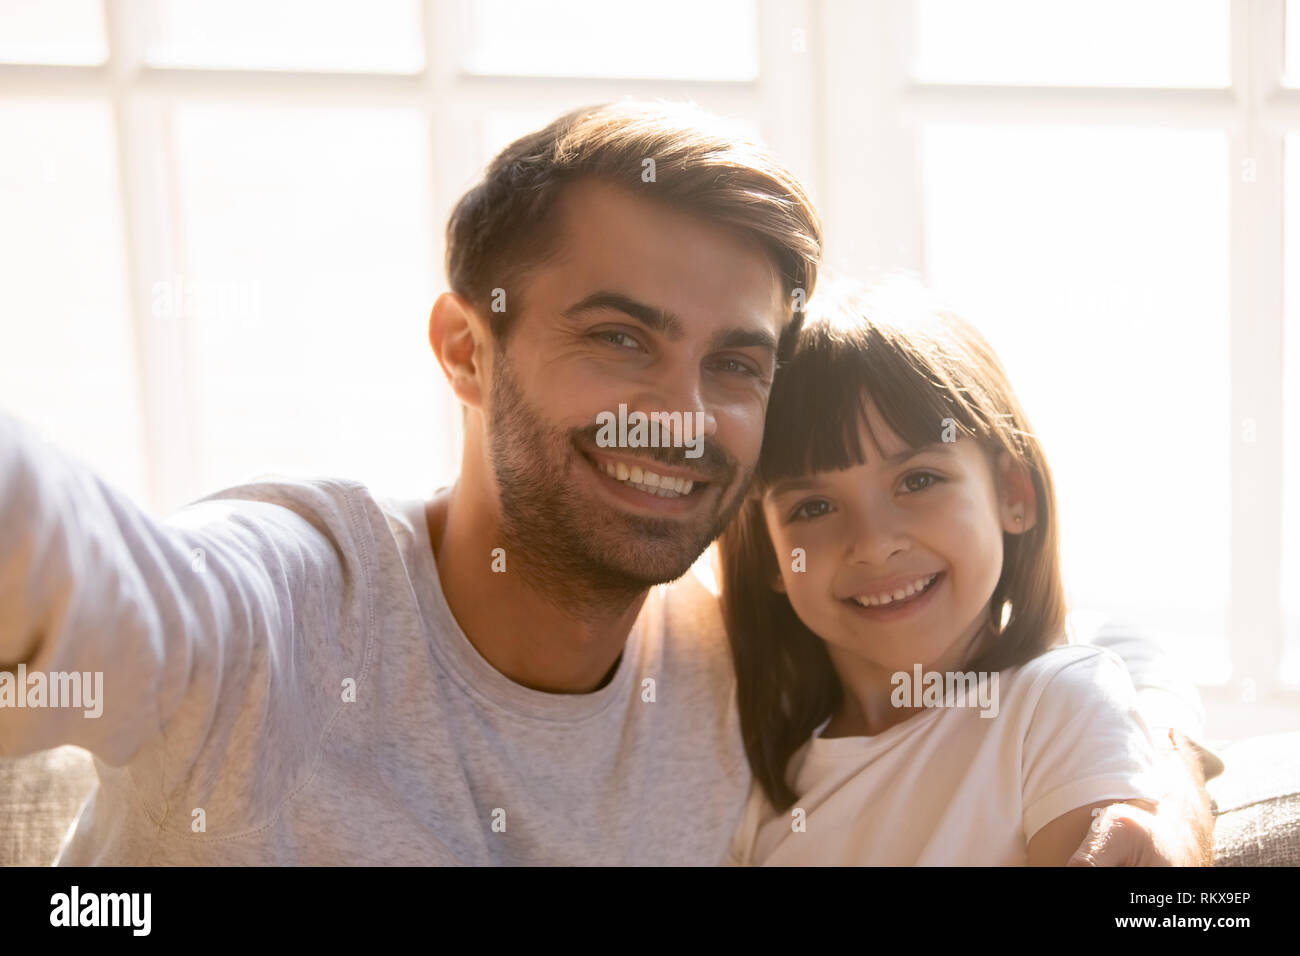 Père et fille pour enfants avec des visages heureux de poser des selfies Banque D'Images